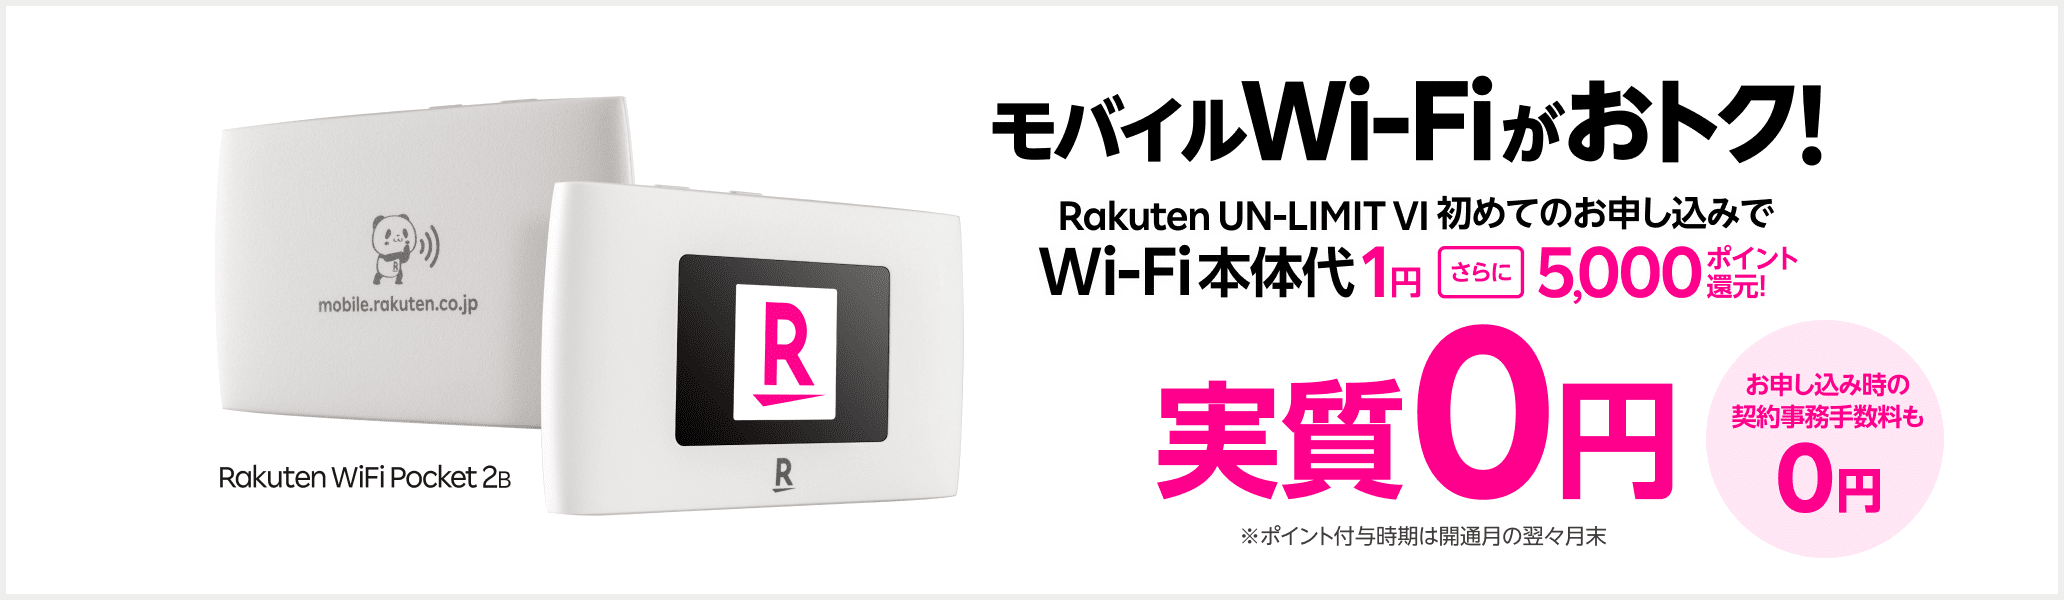 モバイルWi-Fi実質0円お試しキャンペーン お申し込み時の契約事務手数料も0円 Rakuten WiFi Pocket 2B Wi-Fi本体代実質0円 Rakuten UN-LIMIT VI 初めてのお申し込みでセットで本体代1円+5,000ポイント還元！※コメ付与時期は開通月の翌々月末 ダブルで実質0円 Rakuten UN-LIMIT VI通信量 2,980円/月（税込み3,278円）3カ月0円※通話料等別 楽天回線エリアのデーター無制限が3カ月使い放題※初めてのお申し込みに限る ※ 「プランお申し込みとWi-Fi同時購入でWi-Fi本体価格1円」および「【Rakuten UN-LIMIT VIお申し込み特典】だれでも5,000ポイントプレゼントキャンペーン」適用時。楽天ポイントの付与は、「Rakuten UN-LIMIT VI」のプラン利用開始が確認された月の翌々月末日頃に、期間限定ポイントで行います。※ 本体代金割引キャンペーンの適用はお1人様1回までとなります。またRakuten WiFi Pocketだれでも0円お試しキャンペーンを適用している場合、本キャンペーンは対象外になります。※ 楽天回線エリア外は5GB/月を超過すると最大1Mbpsで使い放題。最大1Mbpsで使用時、動画再生・アプリダウンロード等では、時間がかかる場合あり。通信速度はベストエフォート（規格上の最大速度）であり、実効速度は通信環境・状況により変動します。 ※ Rakuten UN-LIMIT VIの3カ月無料は、お1人様最初の1回線目1度のみ。製品代、オプション料、通話料等は別費用。「プラン料金1年無料」適用者は対象外。2回線目以降は0GB～3GBまで980円（税込1,078円）。 ※データ無制限は、楽天基地局に接続時。公平にサービスを提供するため通信速度の制御を行う場合があります。※18歳未満のお客様は本製品とプランのセットはご購入いただけません。本キャンペーンは適用されませんので、あらかじめご了承ください。